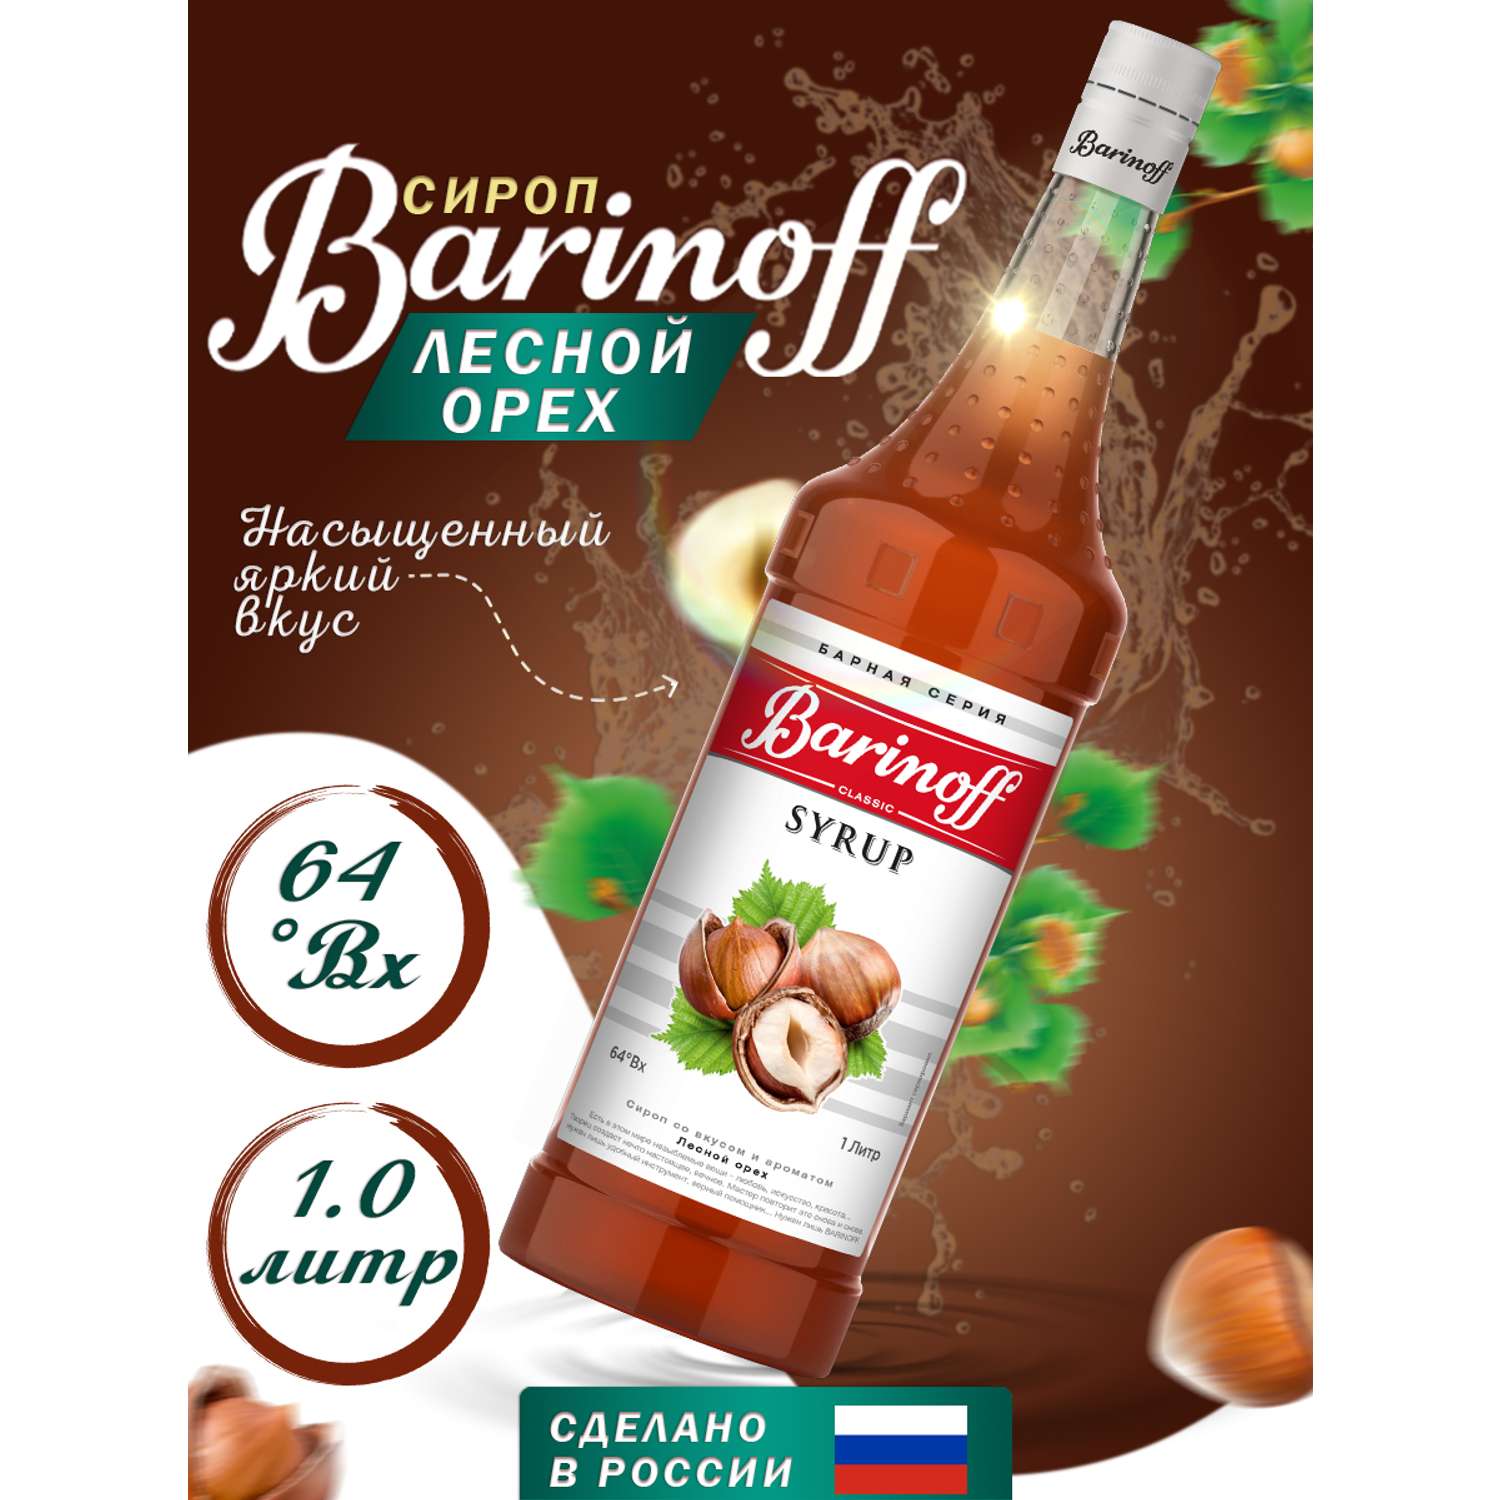 Сироп Barinoff Лесной орех для кофе и коктелей 1л - фото 1